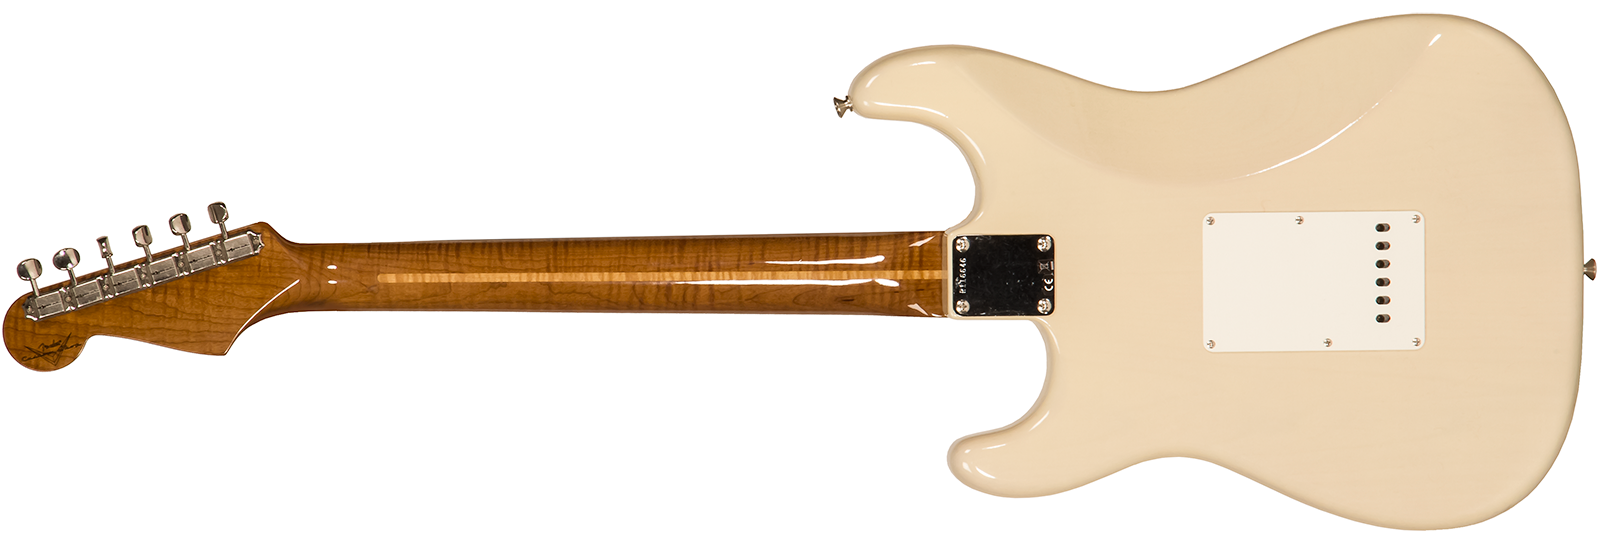 Fender Custom Shop Strat 1957 3s Trem Mn #r116646 - Lush Closet Classic Vintage Blonde - E-Gitarre in Str-Form - Variation 1